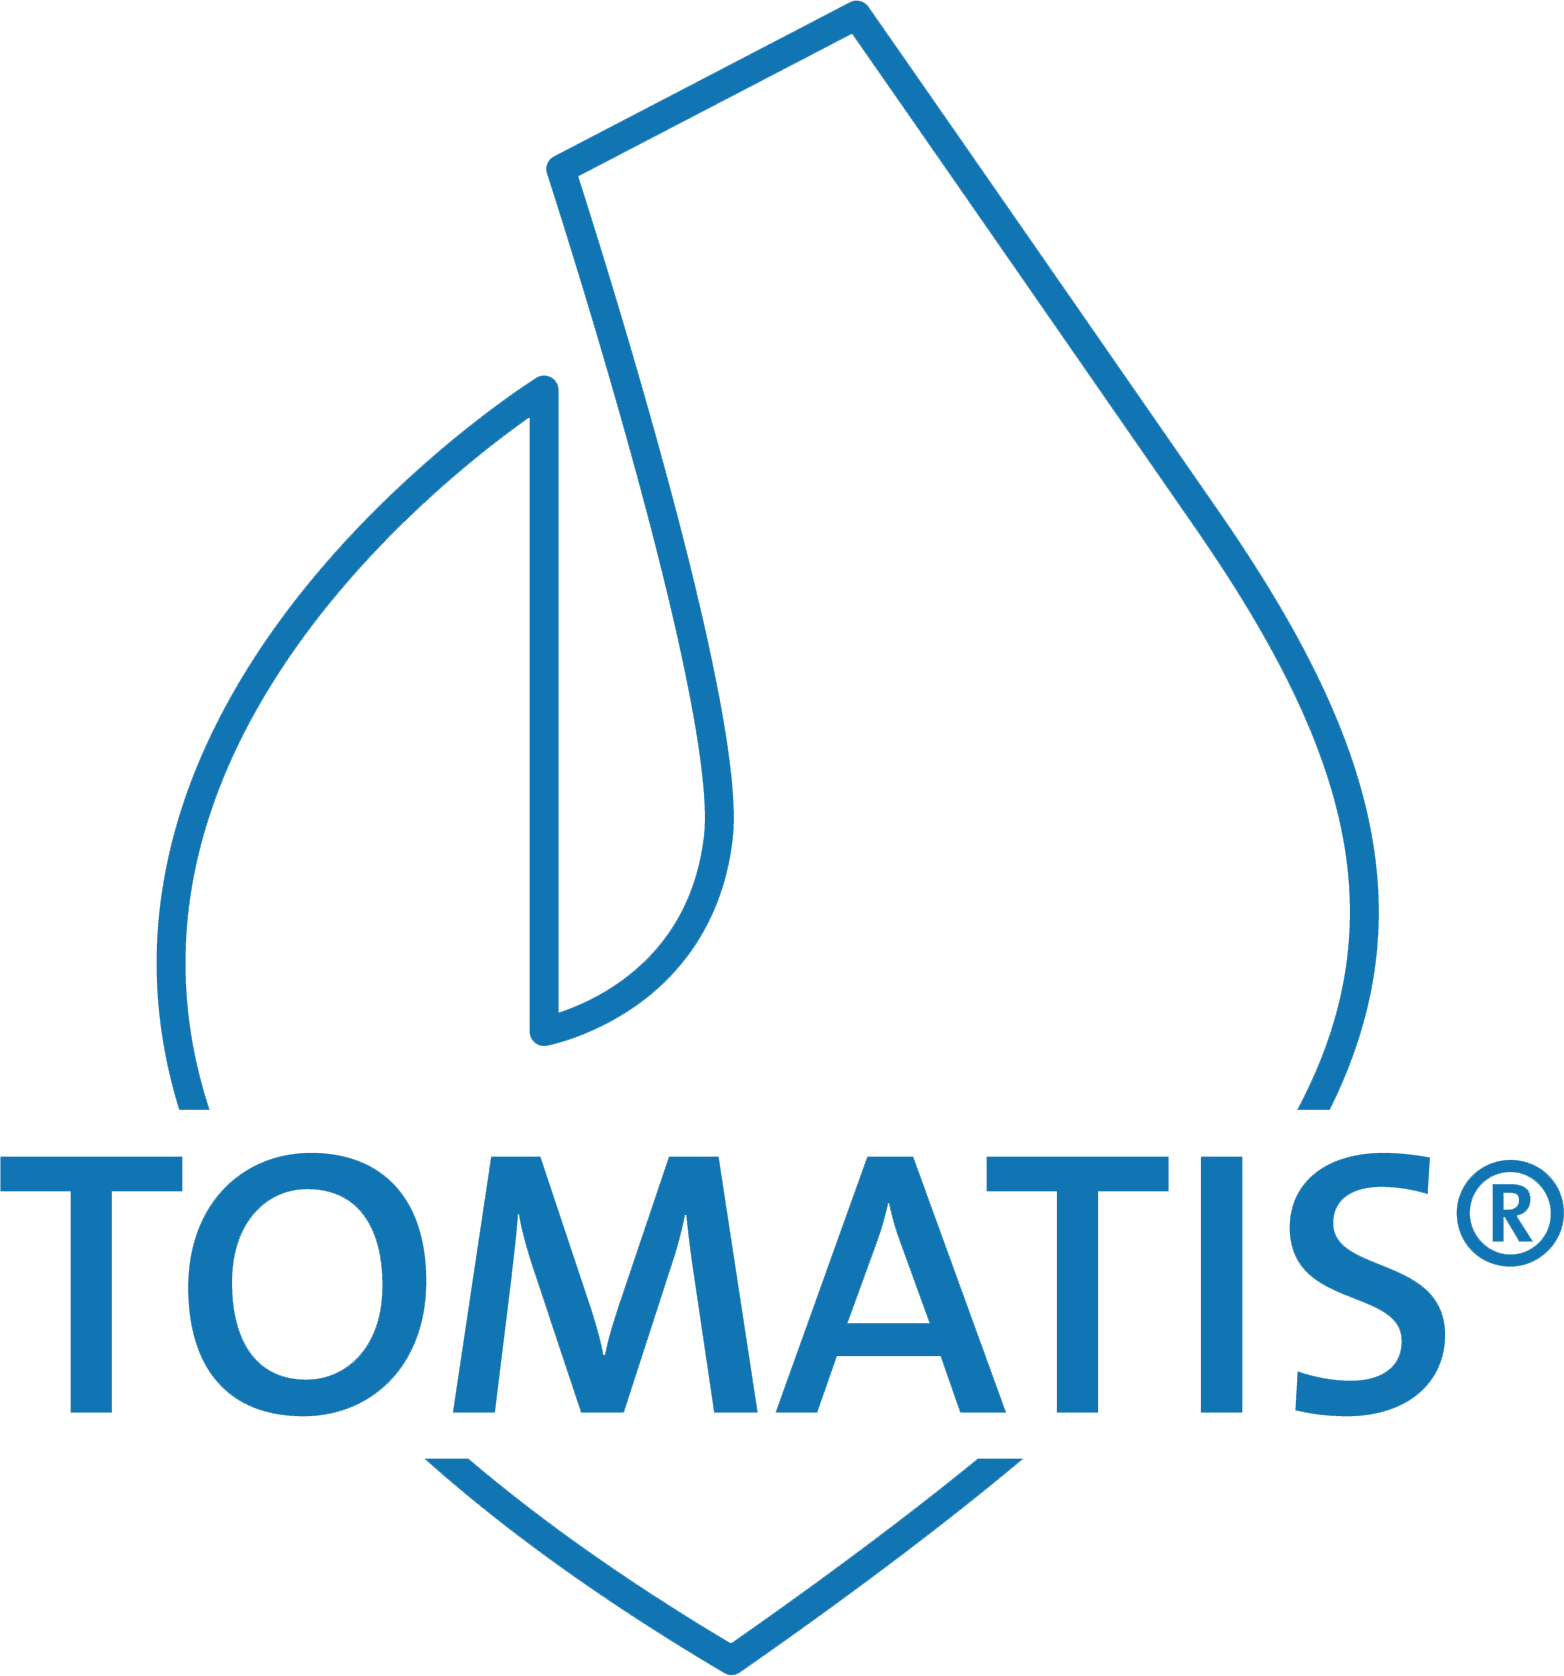 Tomatis logo full